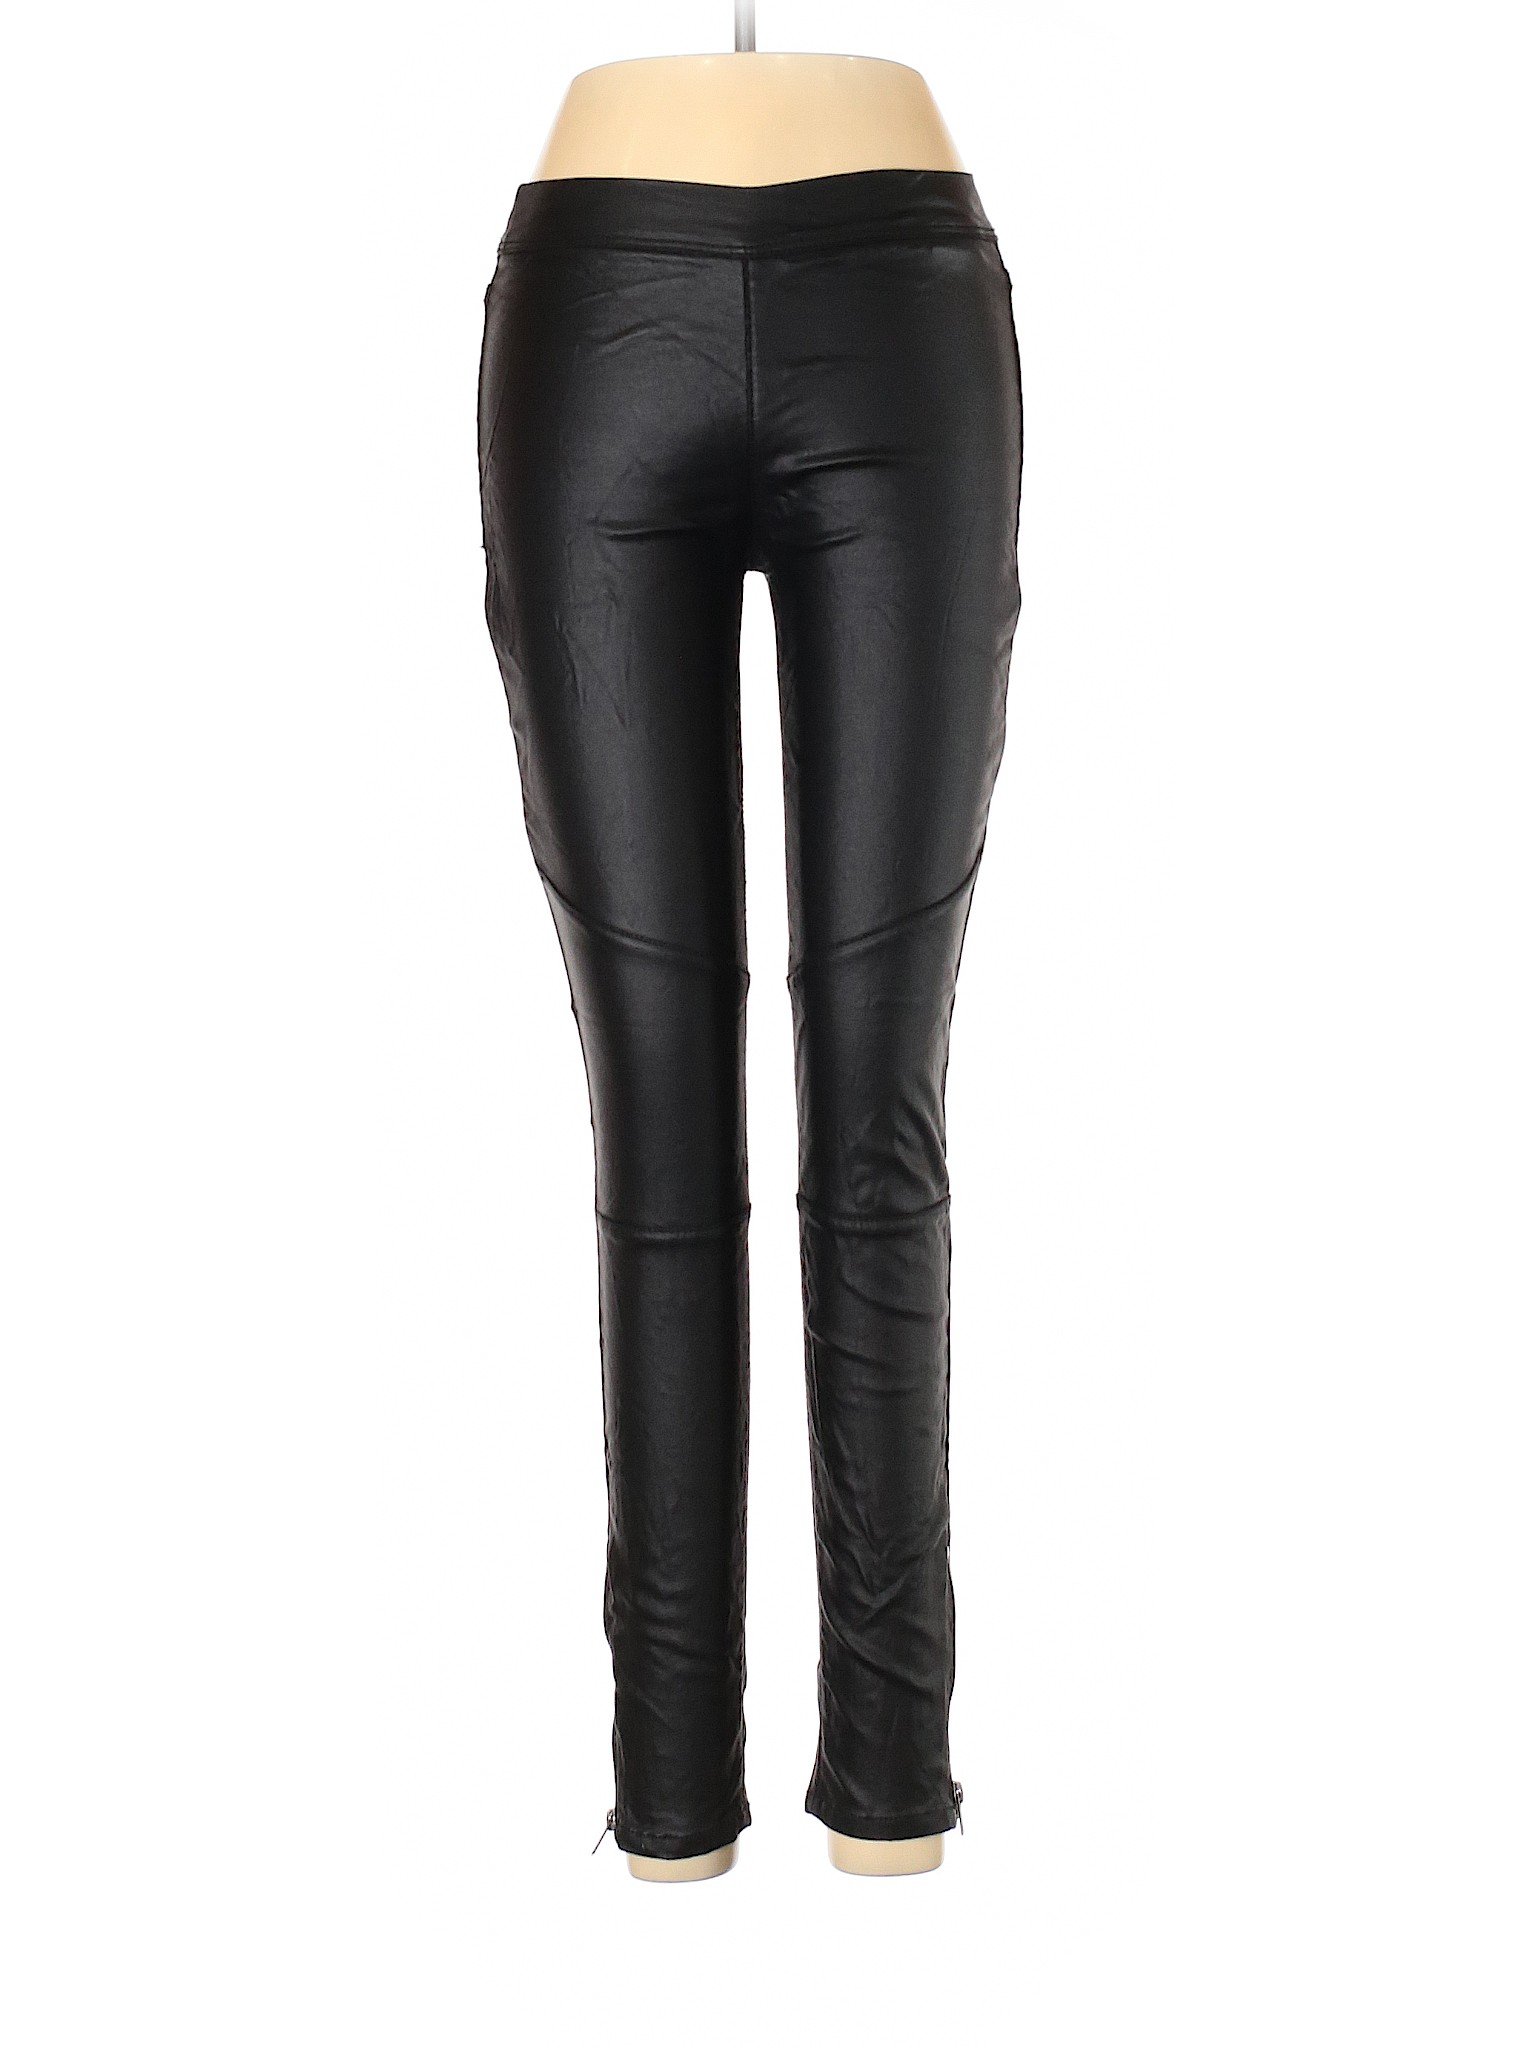 SNEAK PEEK Women Black Casual Pants M | eBay